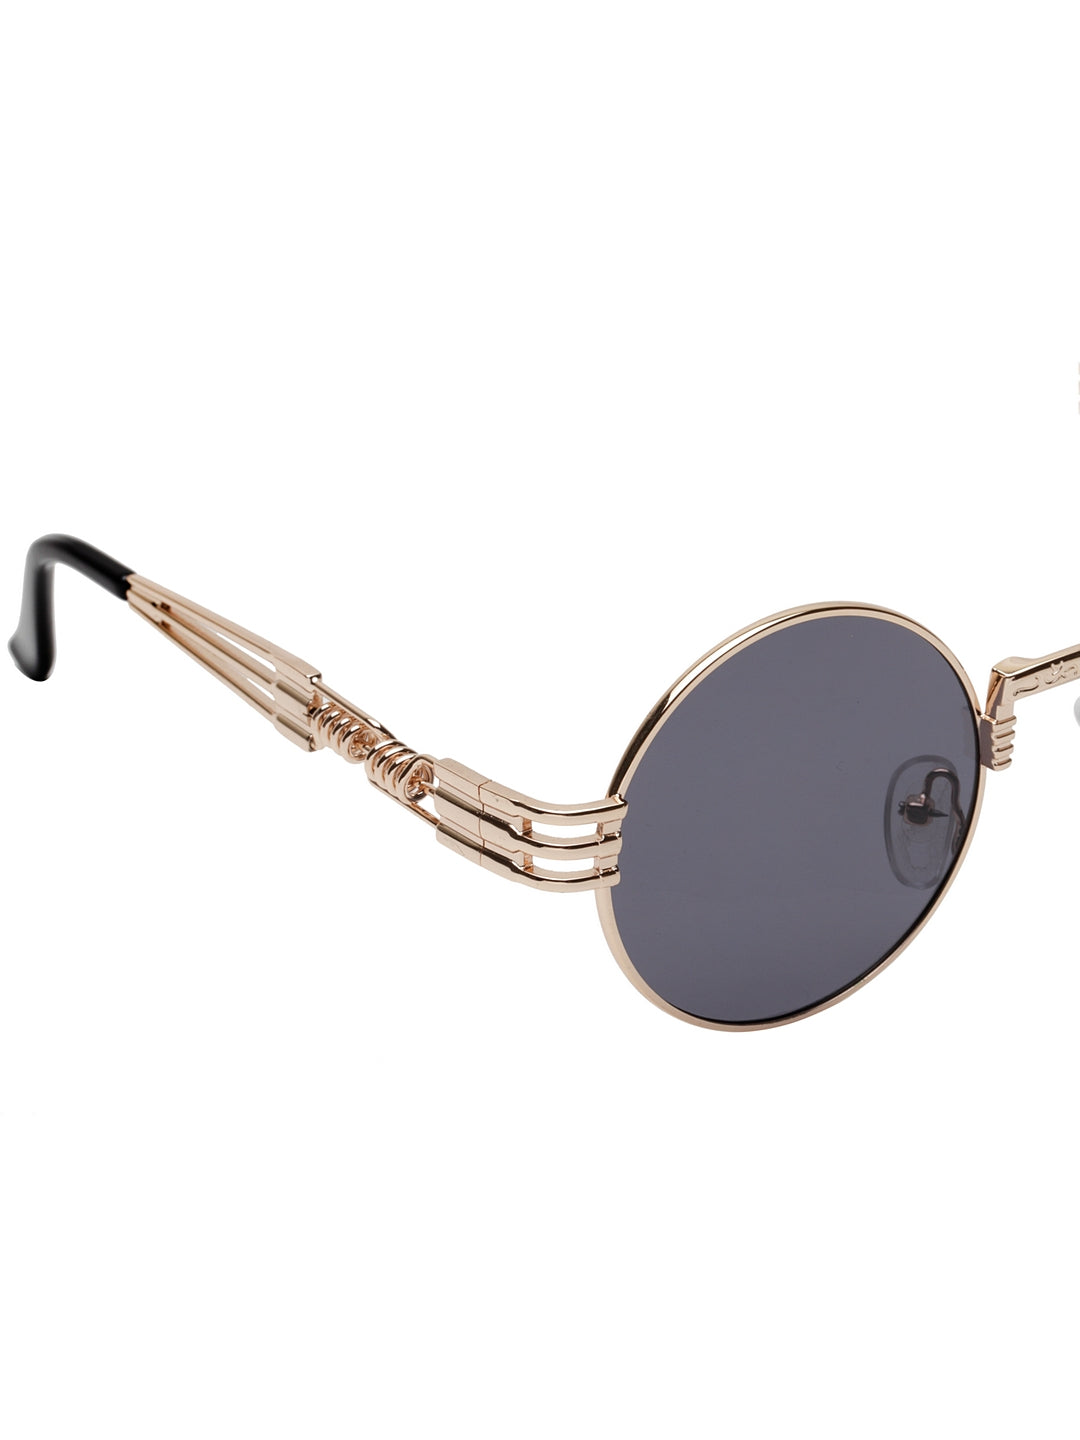 Coole modische Steampunk-Sonnenbrille